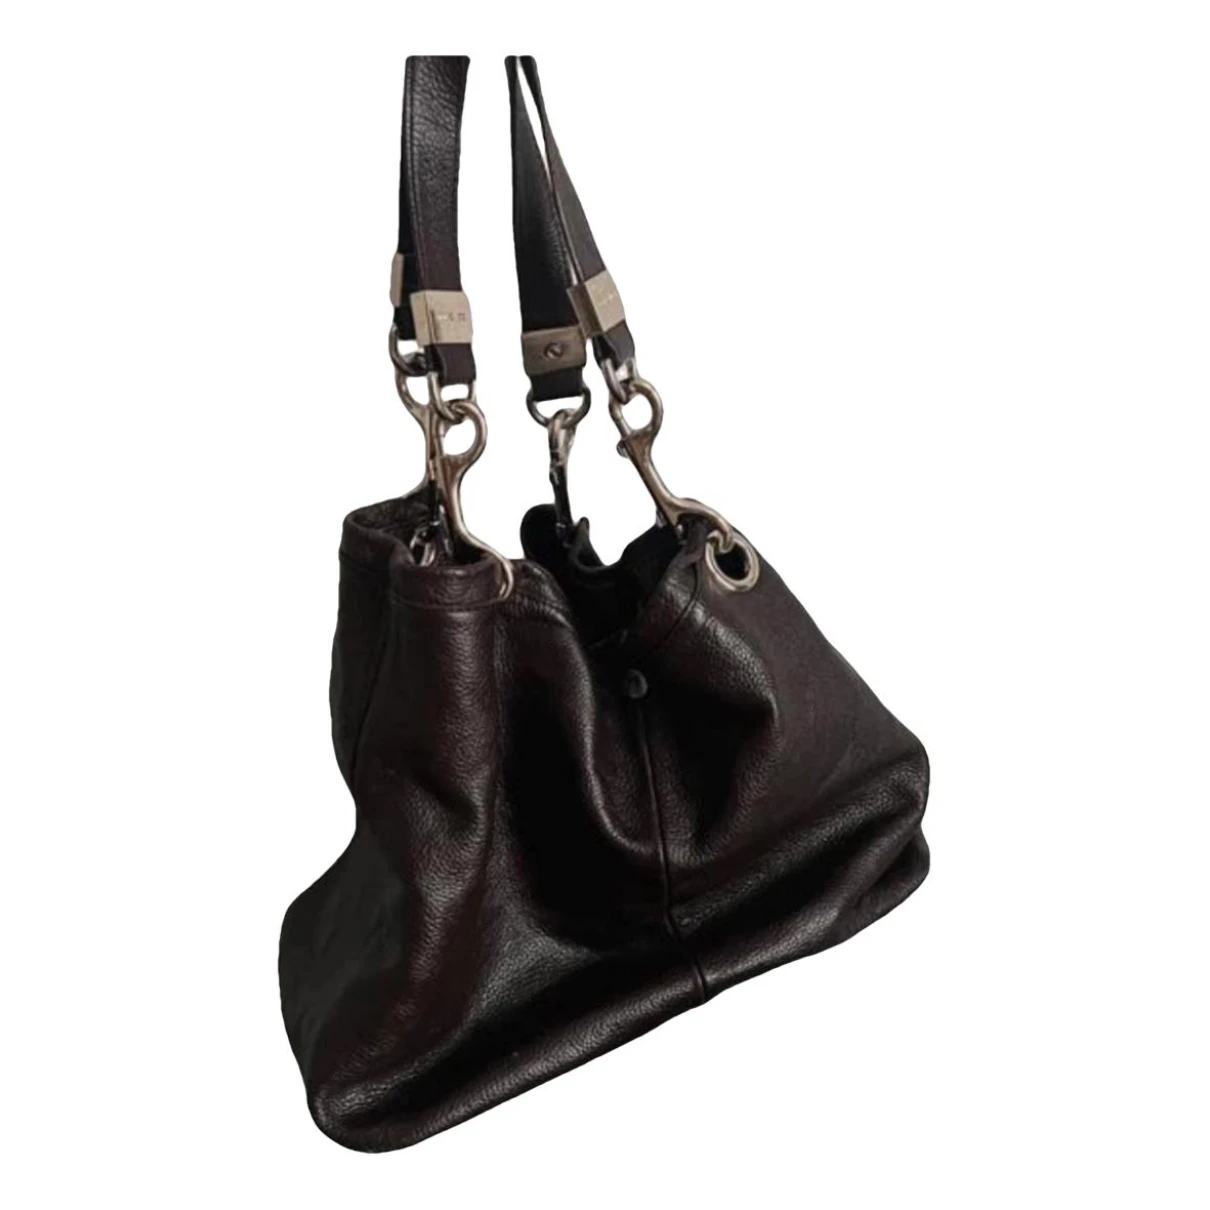 Pre-owned Jimmy Choo Leather Handbag In Brown